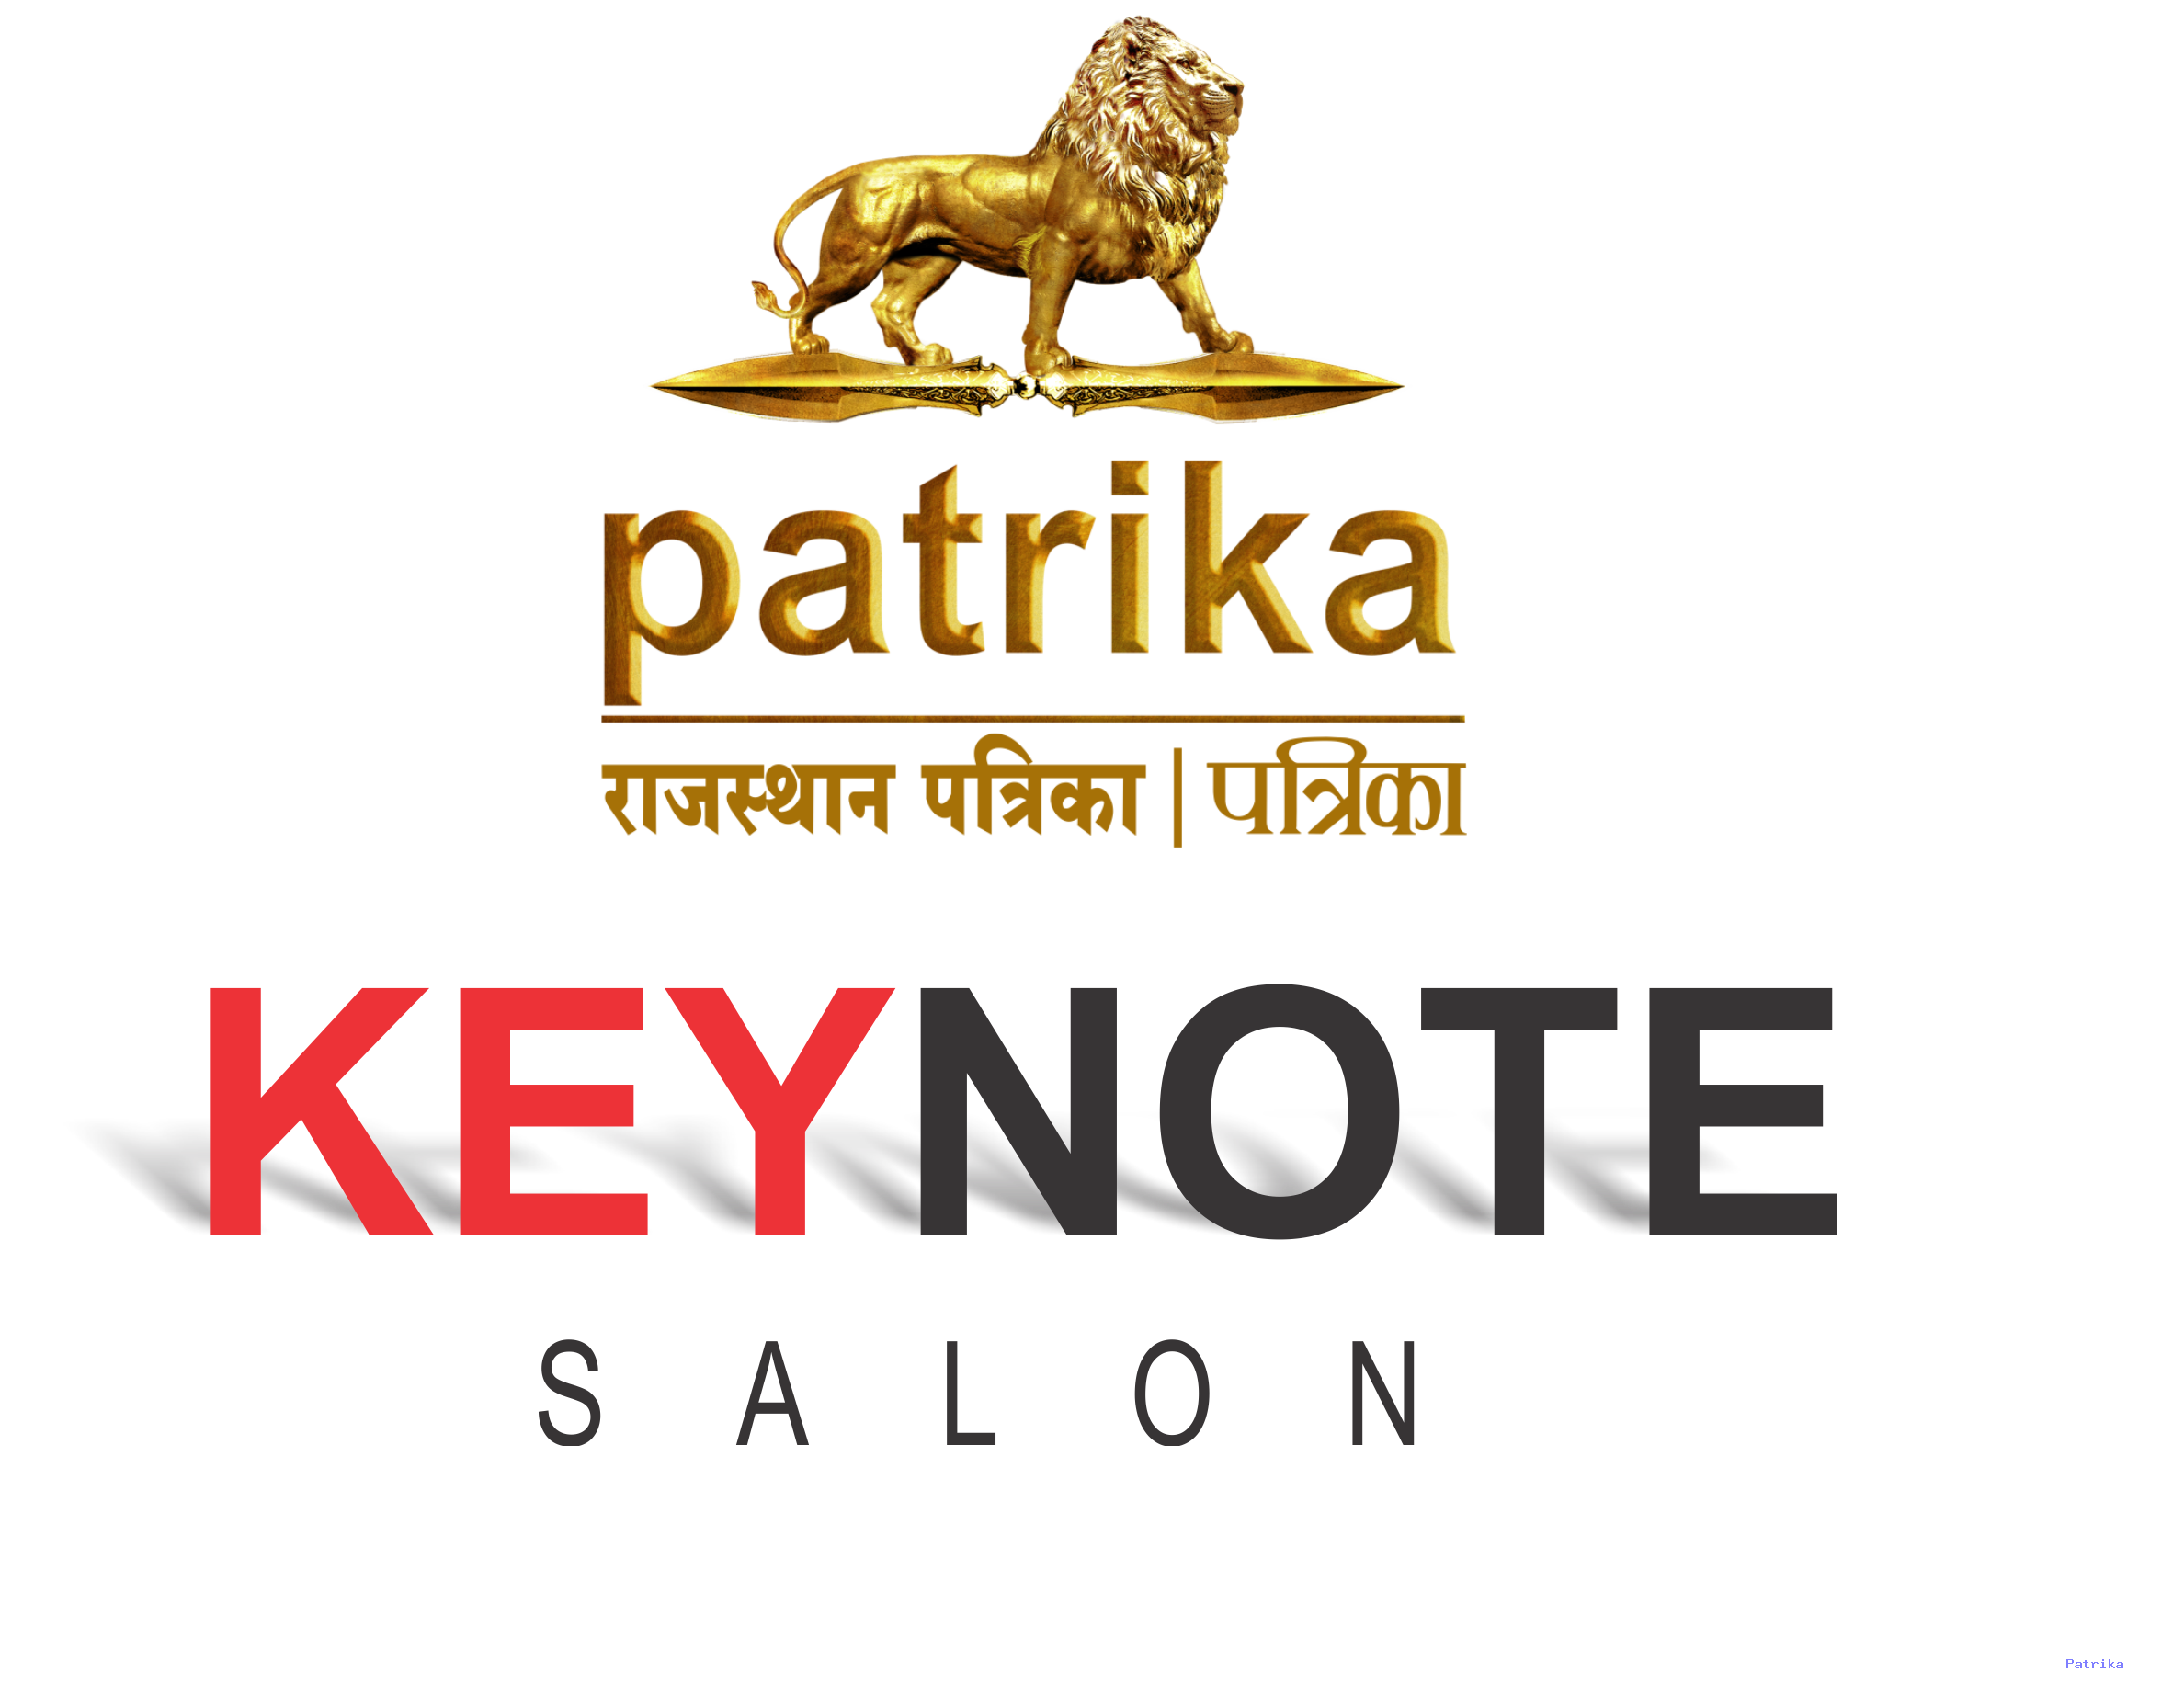 keynote_salon_logo.png